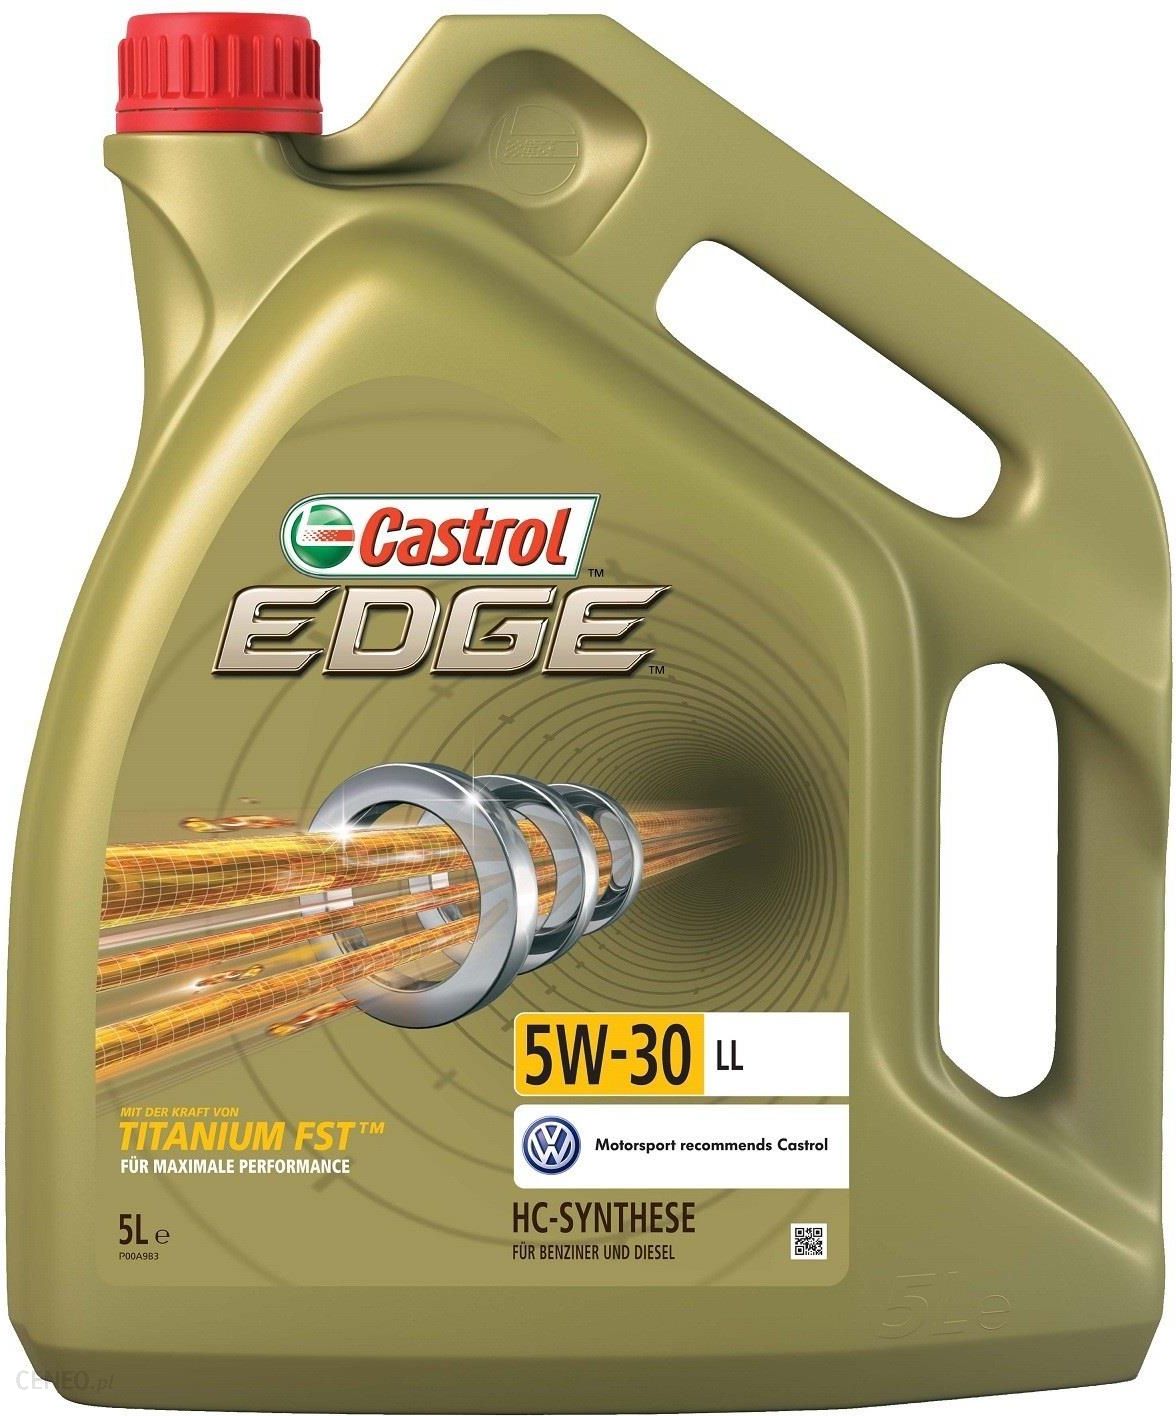  Castrol EDGE Titanium FST 5W-30 LL 5L